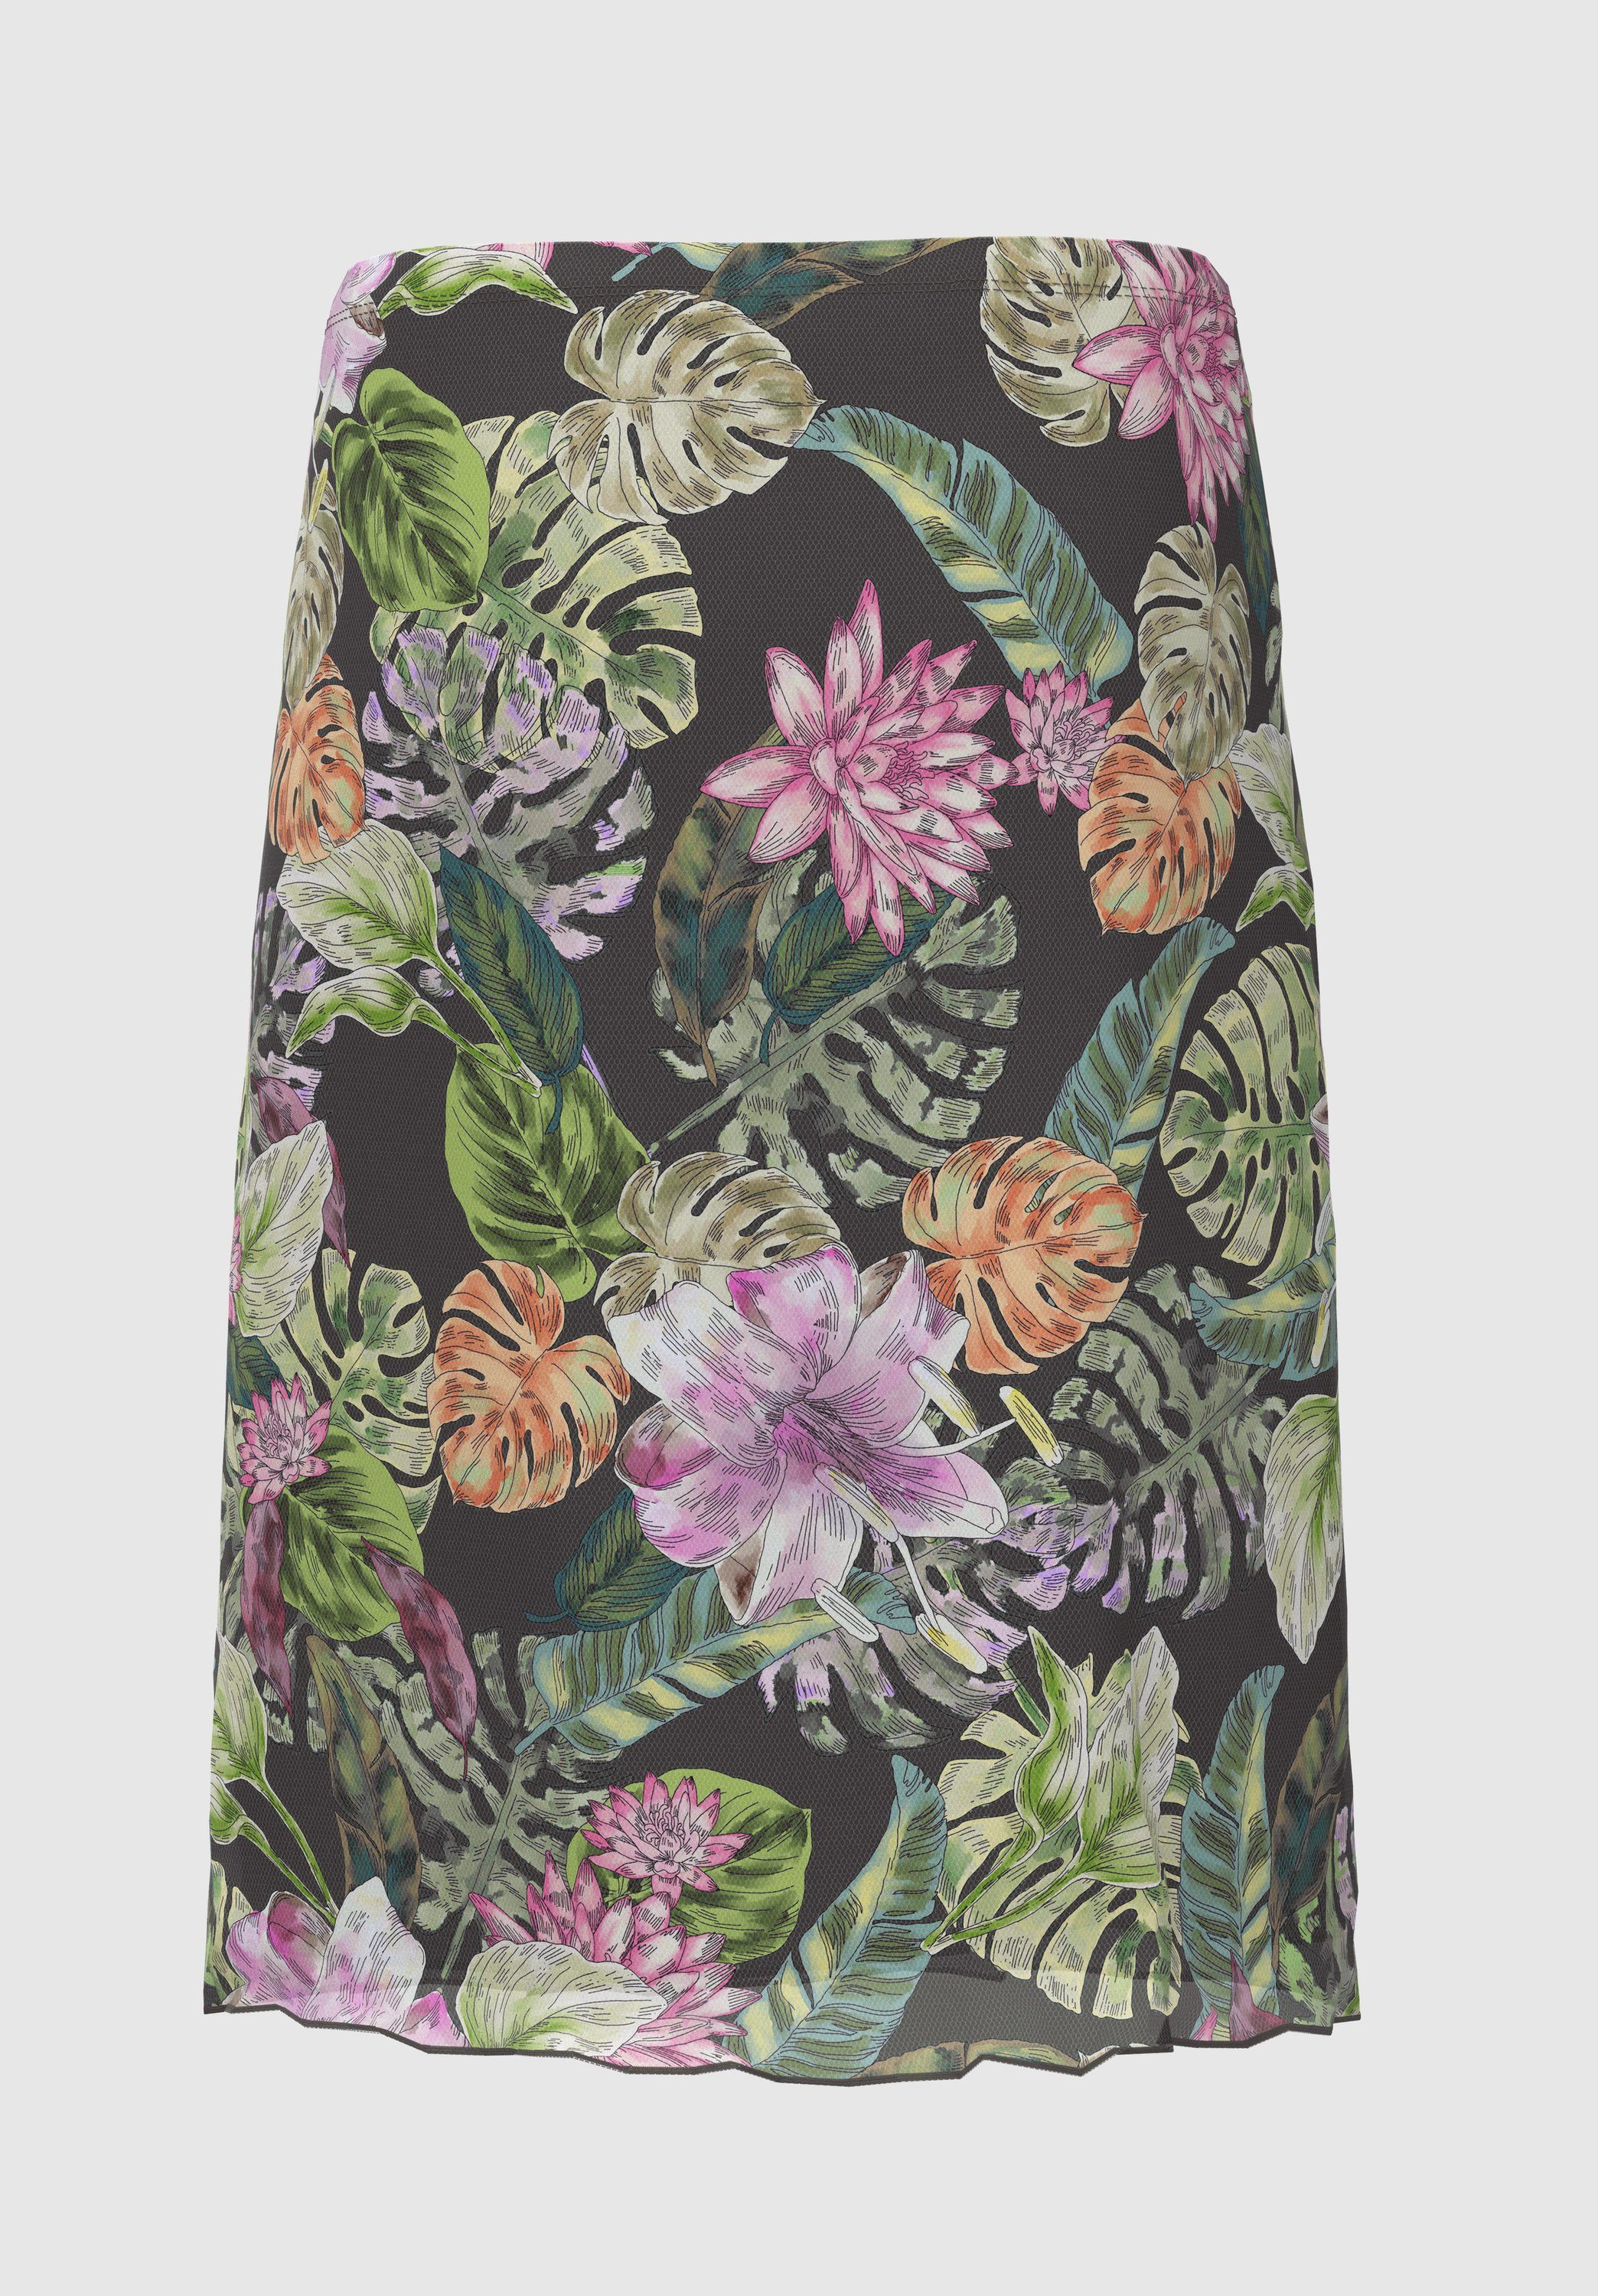 Damen Röcke bianca Meshrock IRIS mit modernem Dschungel-Print in frischen Farben